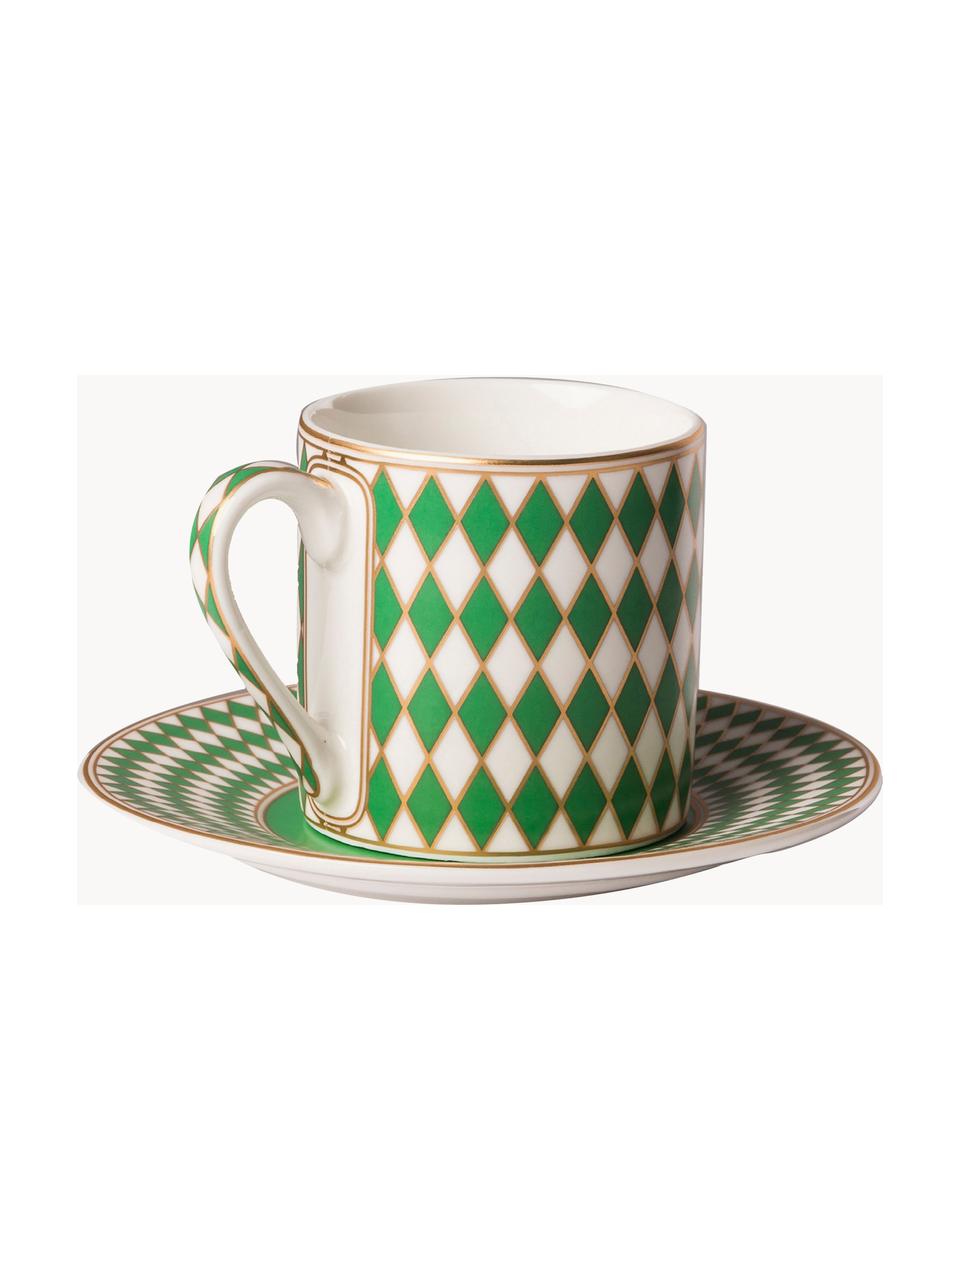 Komplet filiżanek do espresso ze spodkiem Chess, 4 elem., Porcelana glazurowana, Żółty, zielony, złamana biel, Ø 6 x W 6 cm, 100 ml